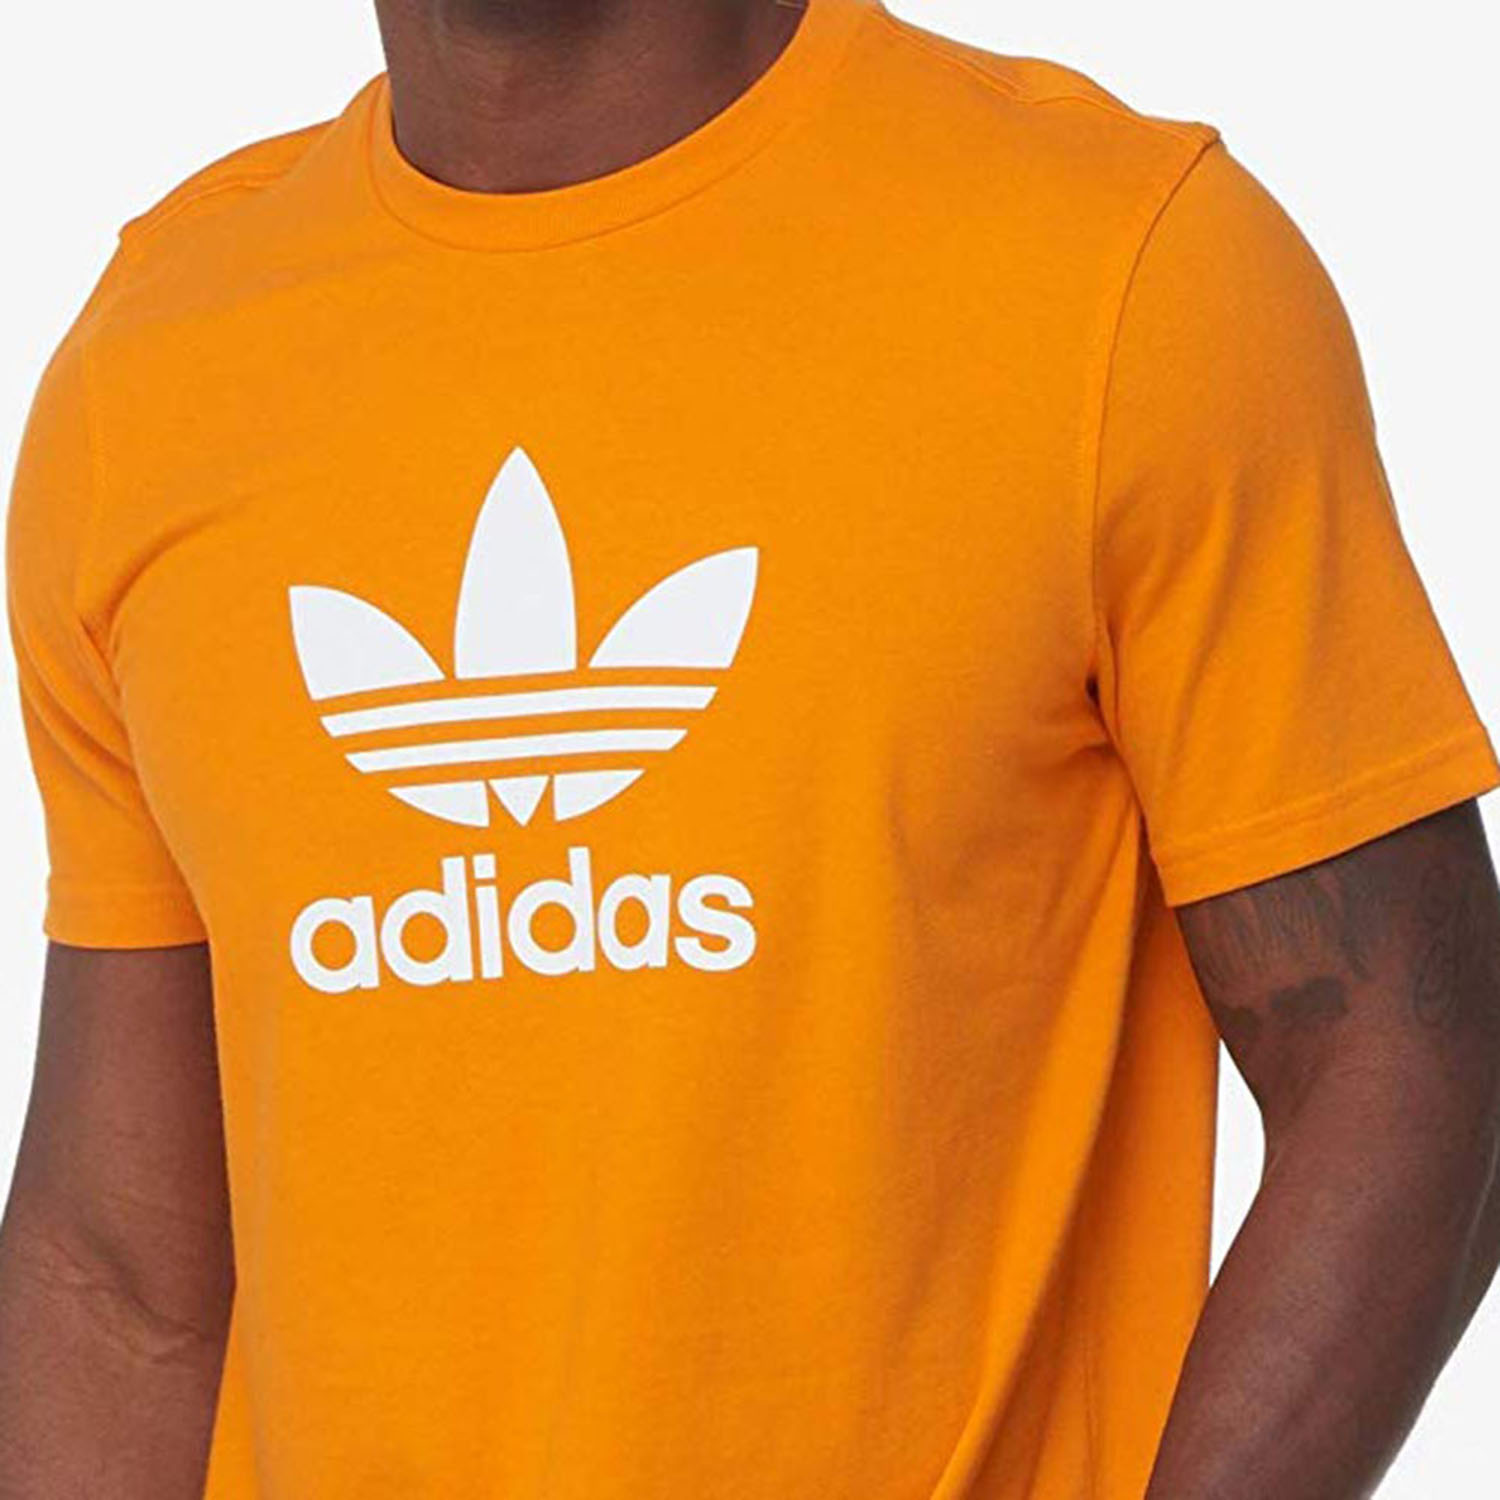 Buy > adidas originals t shirt orange > in stock